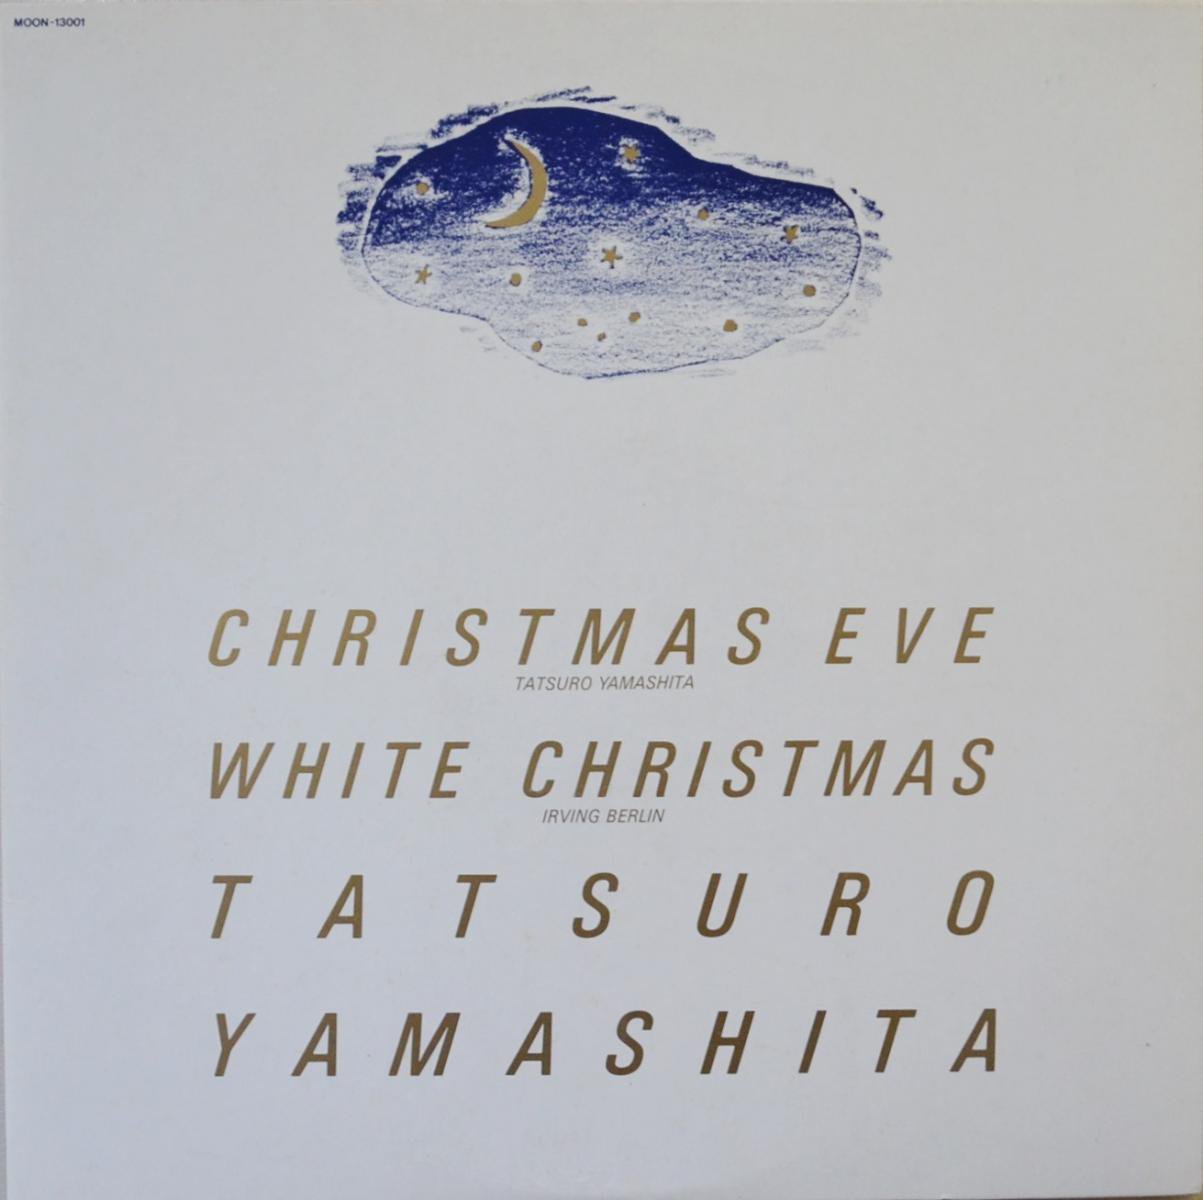 山下達郎 TATSURO YAMASHITA / クリスマス・イブ CHRISTMAS EVE 